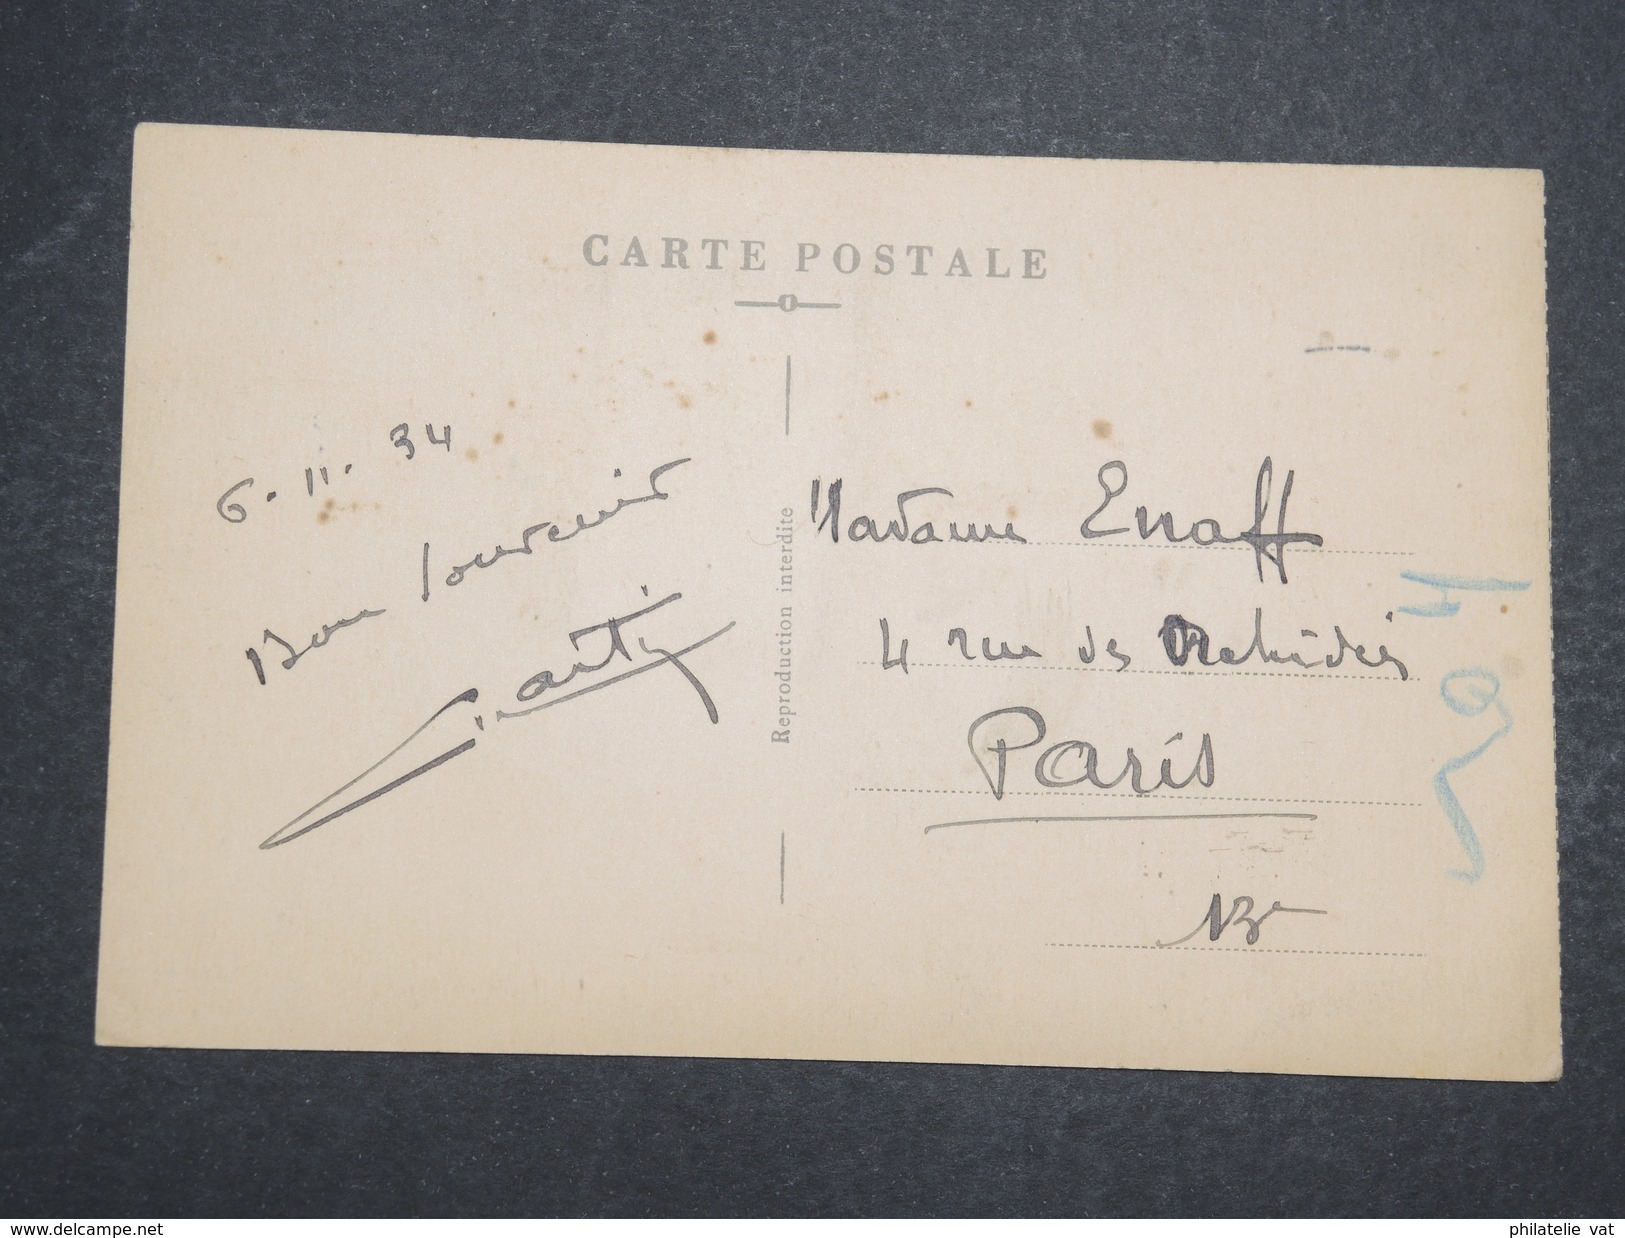 COTE FRANçAISE DES SOMALIS - Carte Postale Djibouti Pour Paris -Nov 1934 - P22098 - Storia Postale